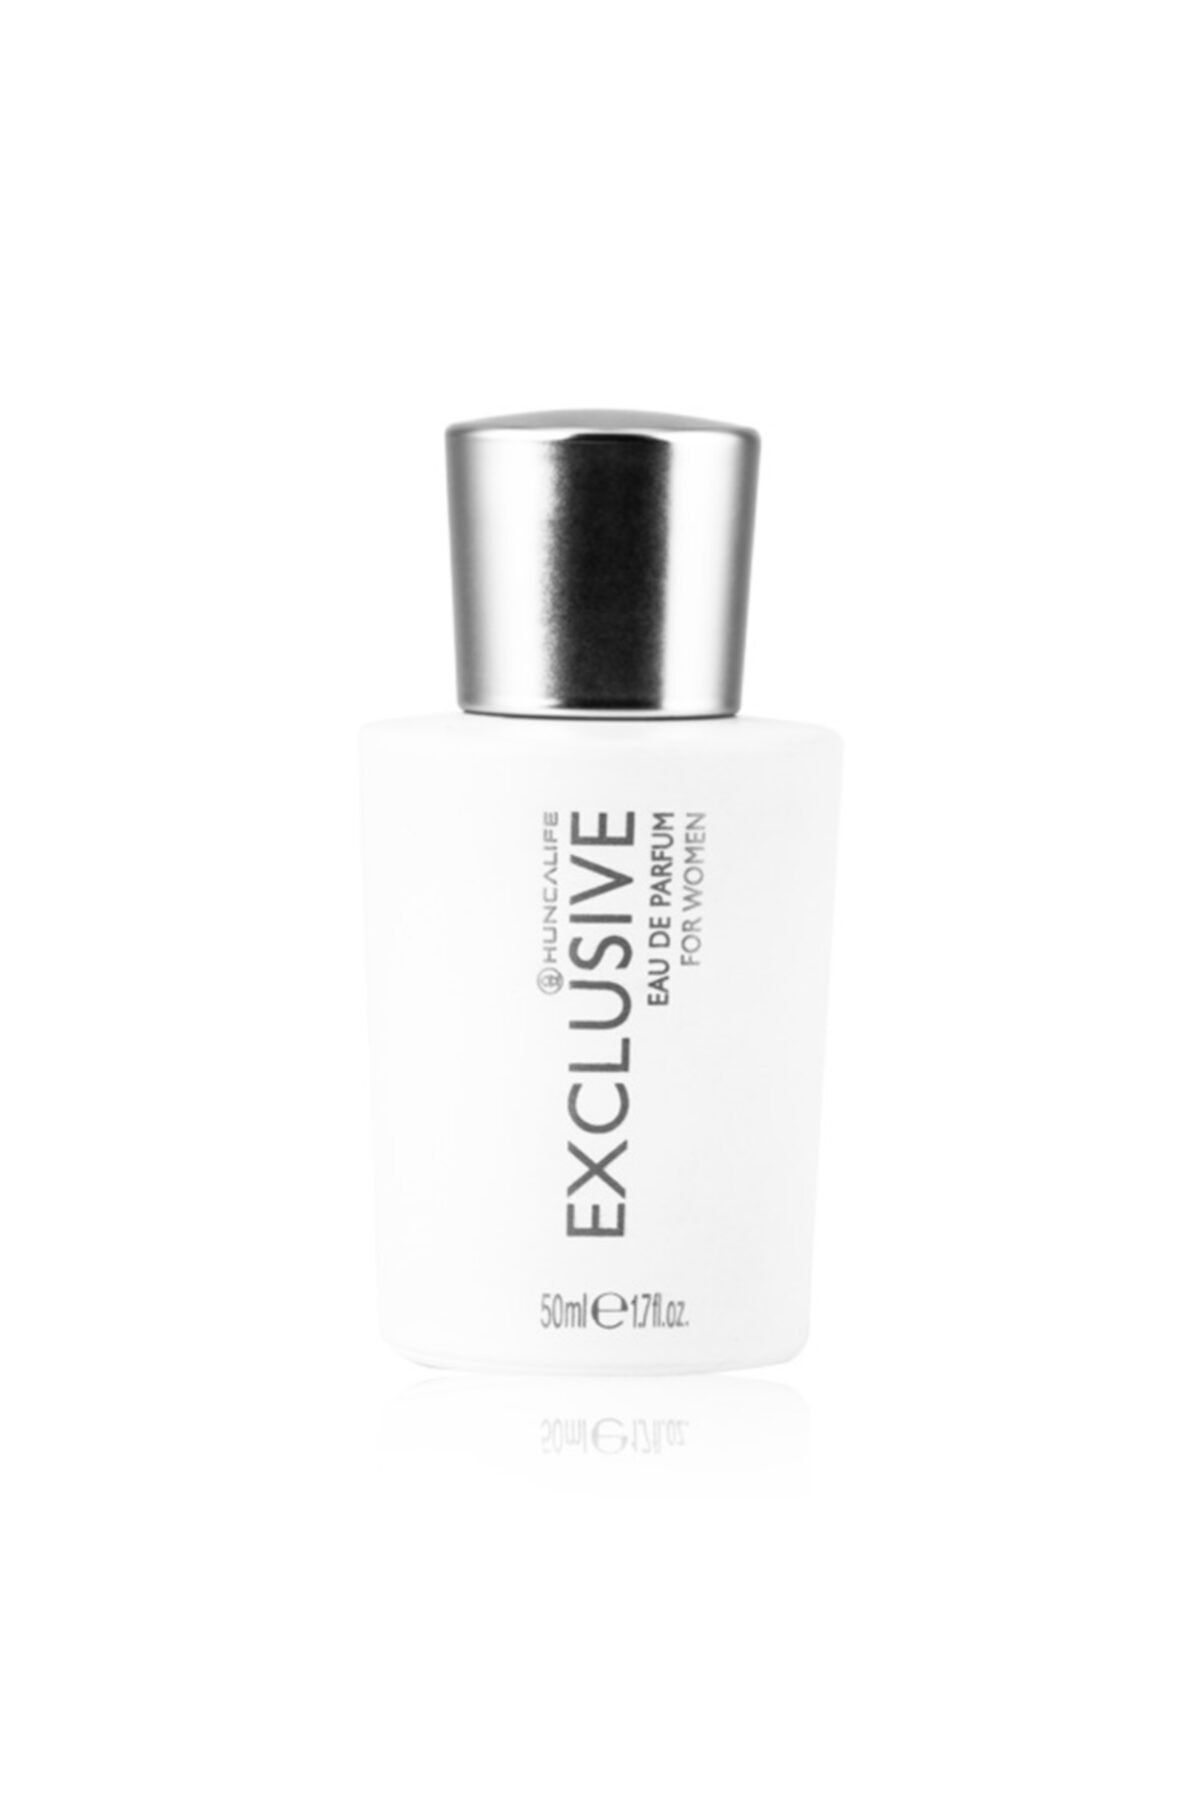 Huncalife Exclusive Kadın Edp 50 ml Kadın Parfüm